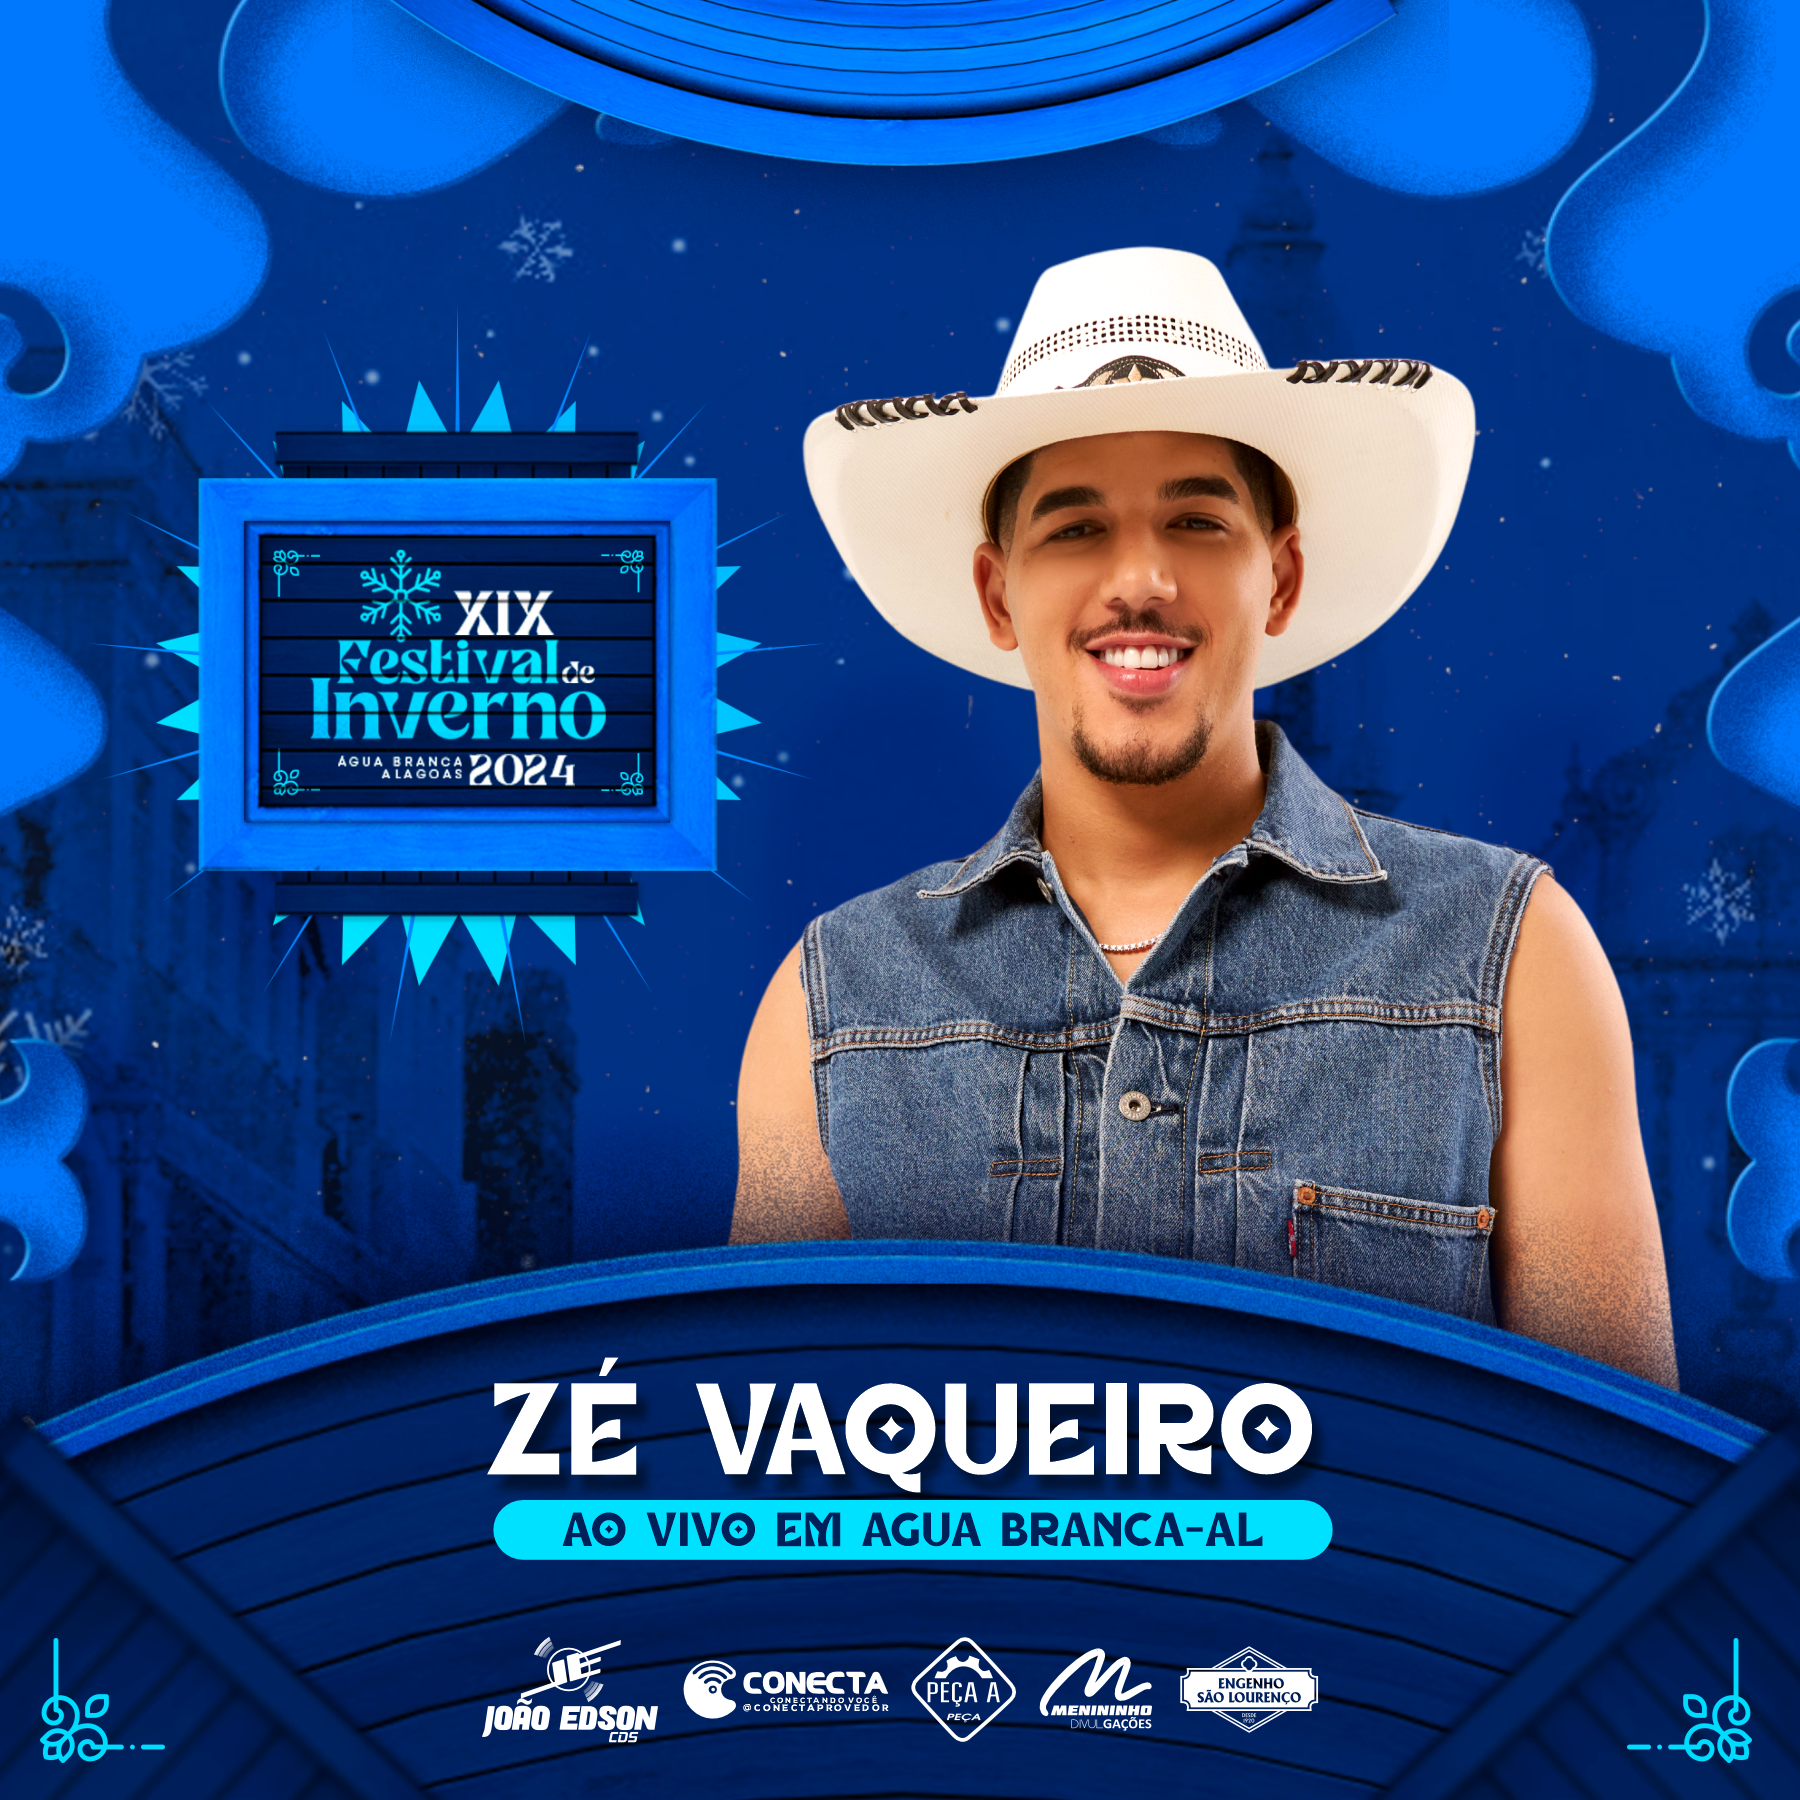 ZE VAQUEIRO FESTIVAL DE INVERNO 2024